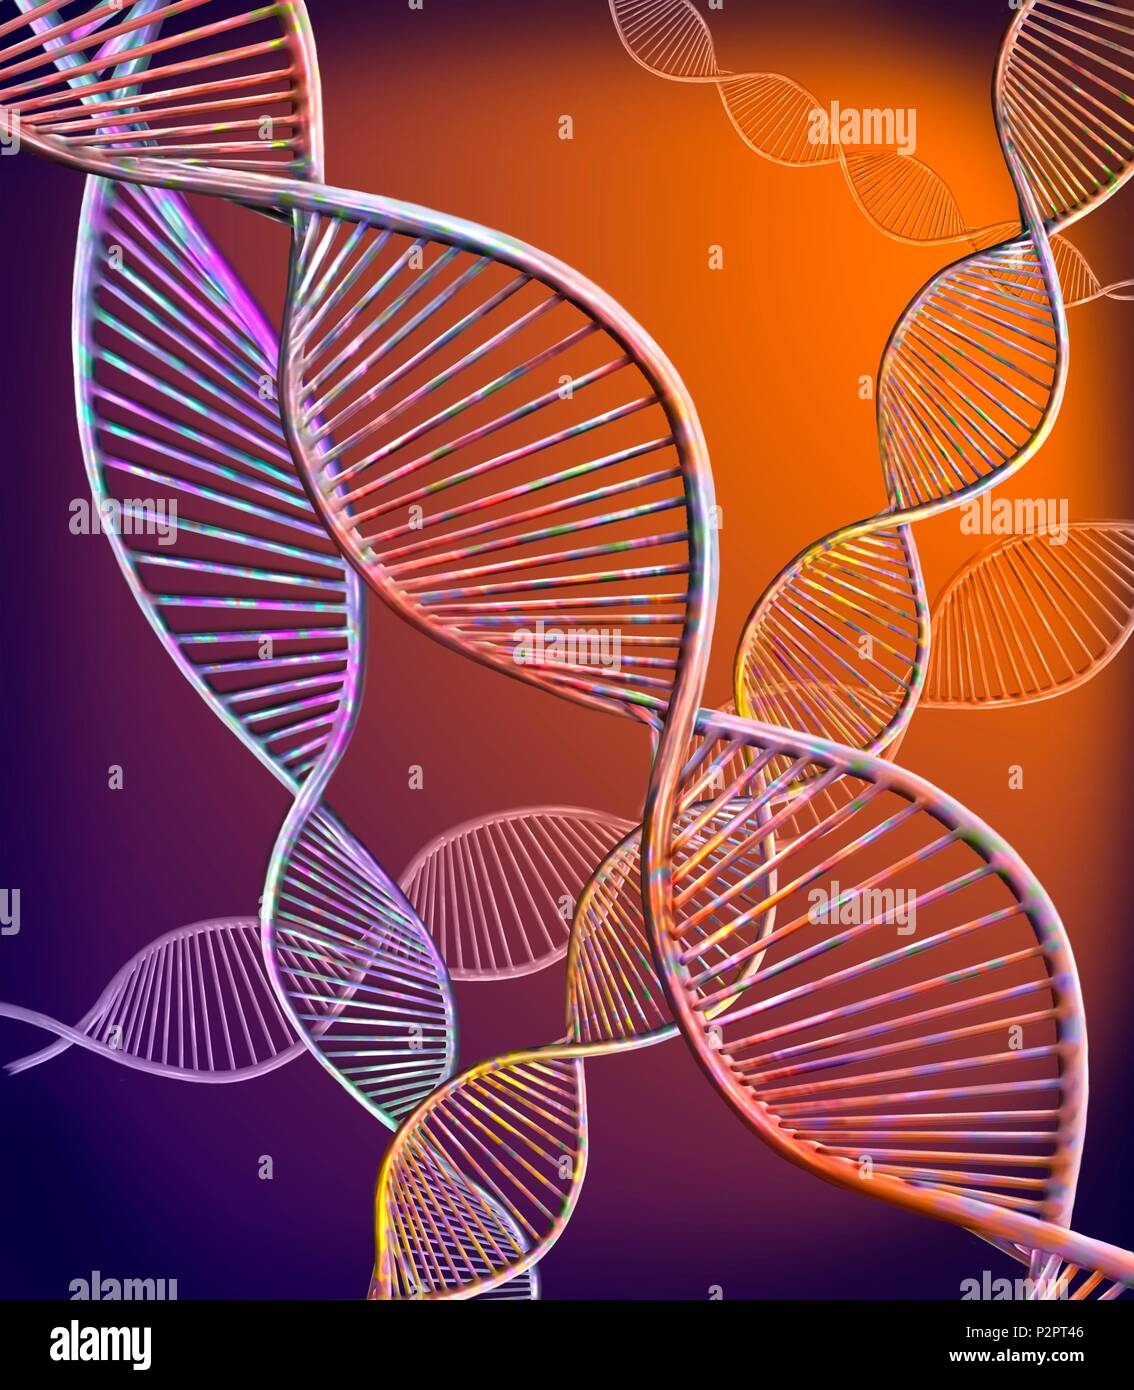 DNA-Stränge. Computer zeigt die Struktur der doppelsträngige DNA (Desoxyribonukleinsäure) Molekülen. Die DNA besteht aus zwei Strängen in einer Doppelhelix verdreht. Jeder Strang besteht aus einem Zucker Phosphat Backbone (gekrümmte) angeschlossenen Unterseiten Nukleotid. Es gibt vier Basen: Adenin, Cytosin, Guanin und Thymin. Die DNA enthält Abschnitte Gene genannt, dass die genetische Information des Körpers zu codieren. Stockfoto